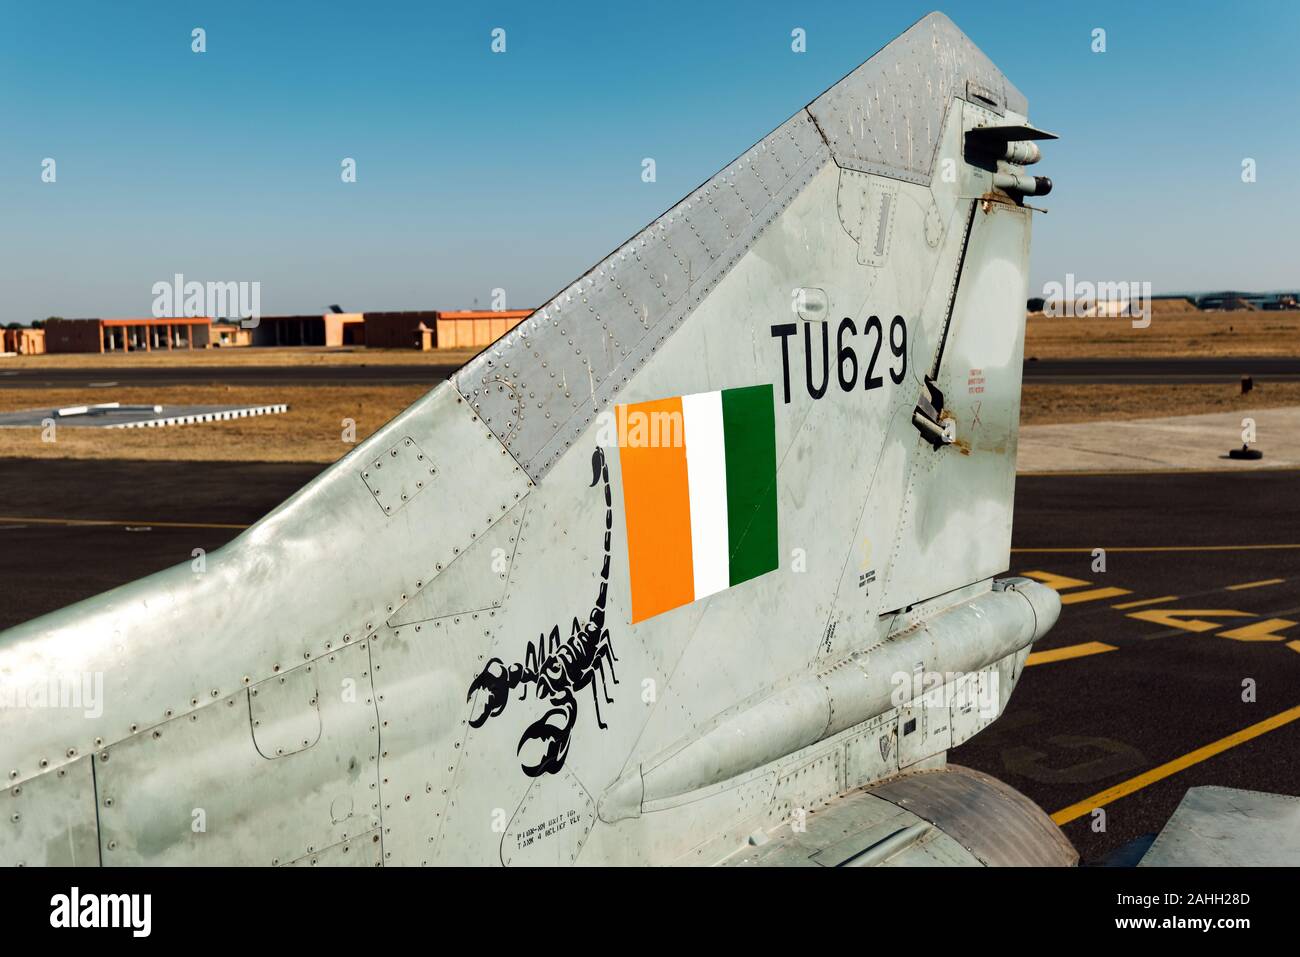 Forza aerea indiana MiG-27 jet da combattimento. L'ultimo parafango swing squadrone della forza aerea indiana gradualmente la MiG-27 su dicembre 27, 2019 Foto Stock